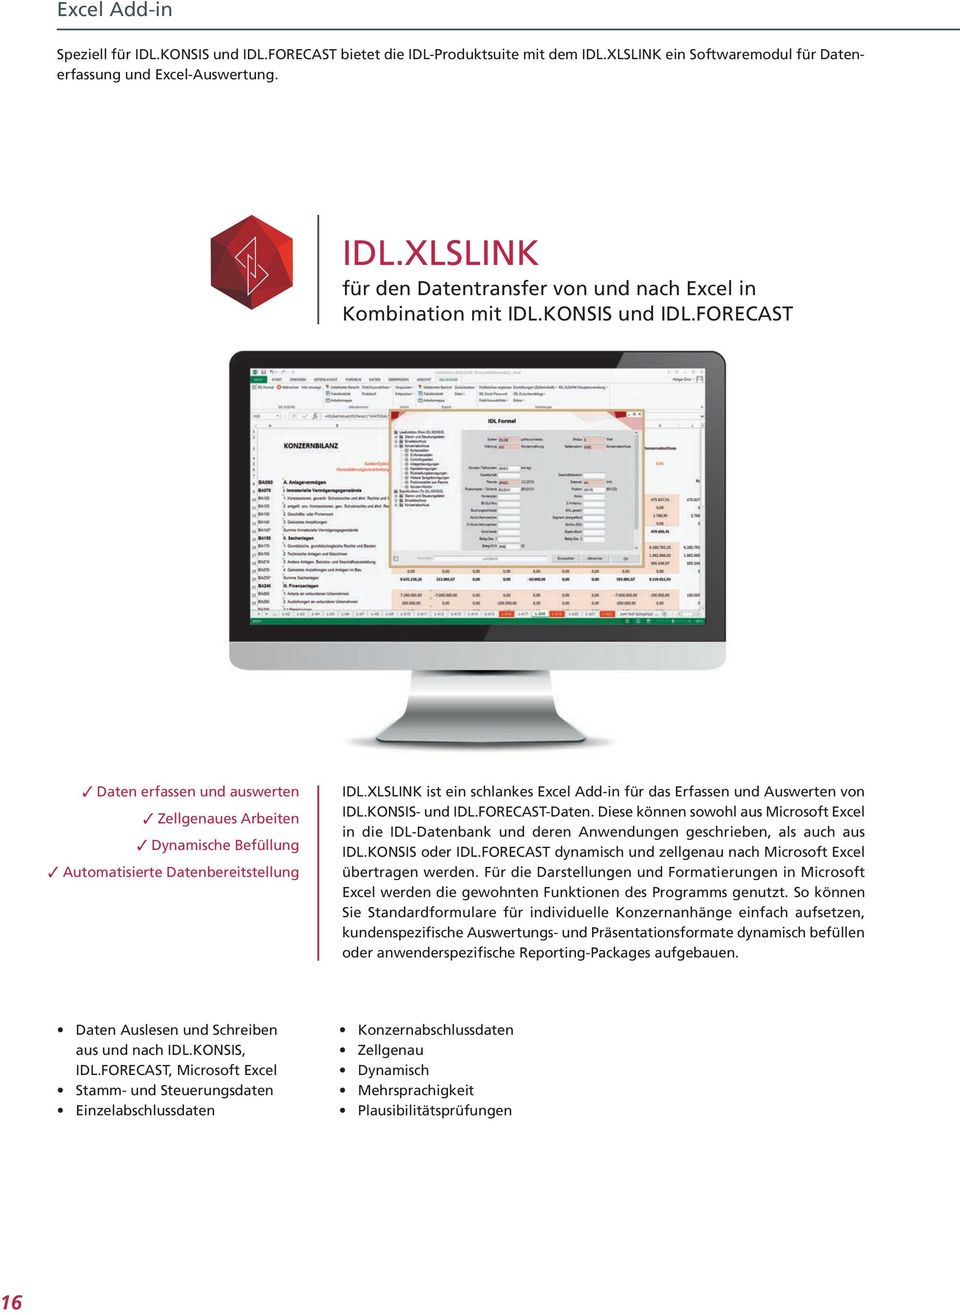 XLSLINK ist ein schlankes Excel Add-in für das Erfassen und Auswerten von IDL.KONSIS- und IDL.FORECAST-Daten.